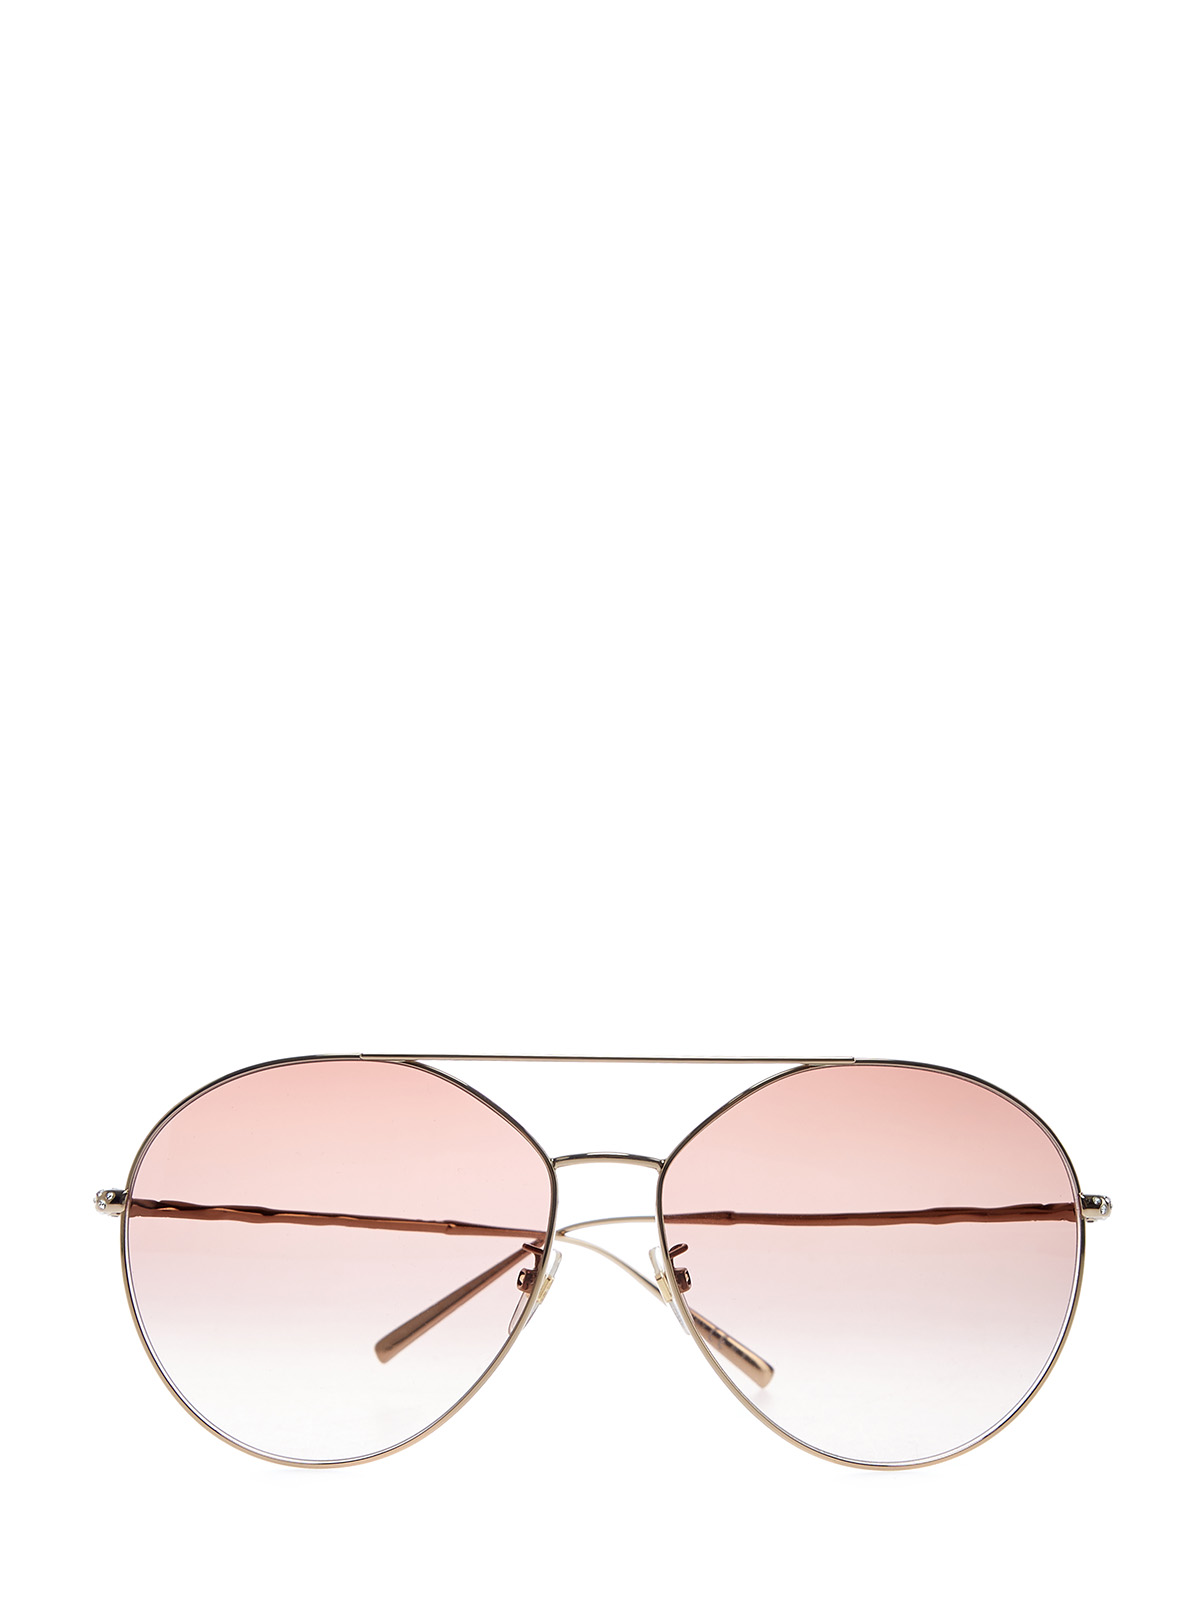 Очки-авиаторы с тонким двойным мостом и кристаллами Swarovski GIVENCHY (sunglasses), цвет коричневый - фото 1